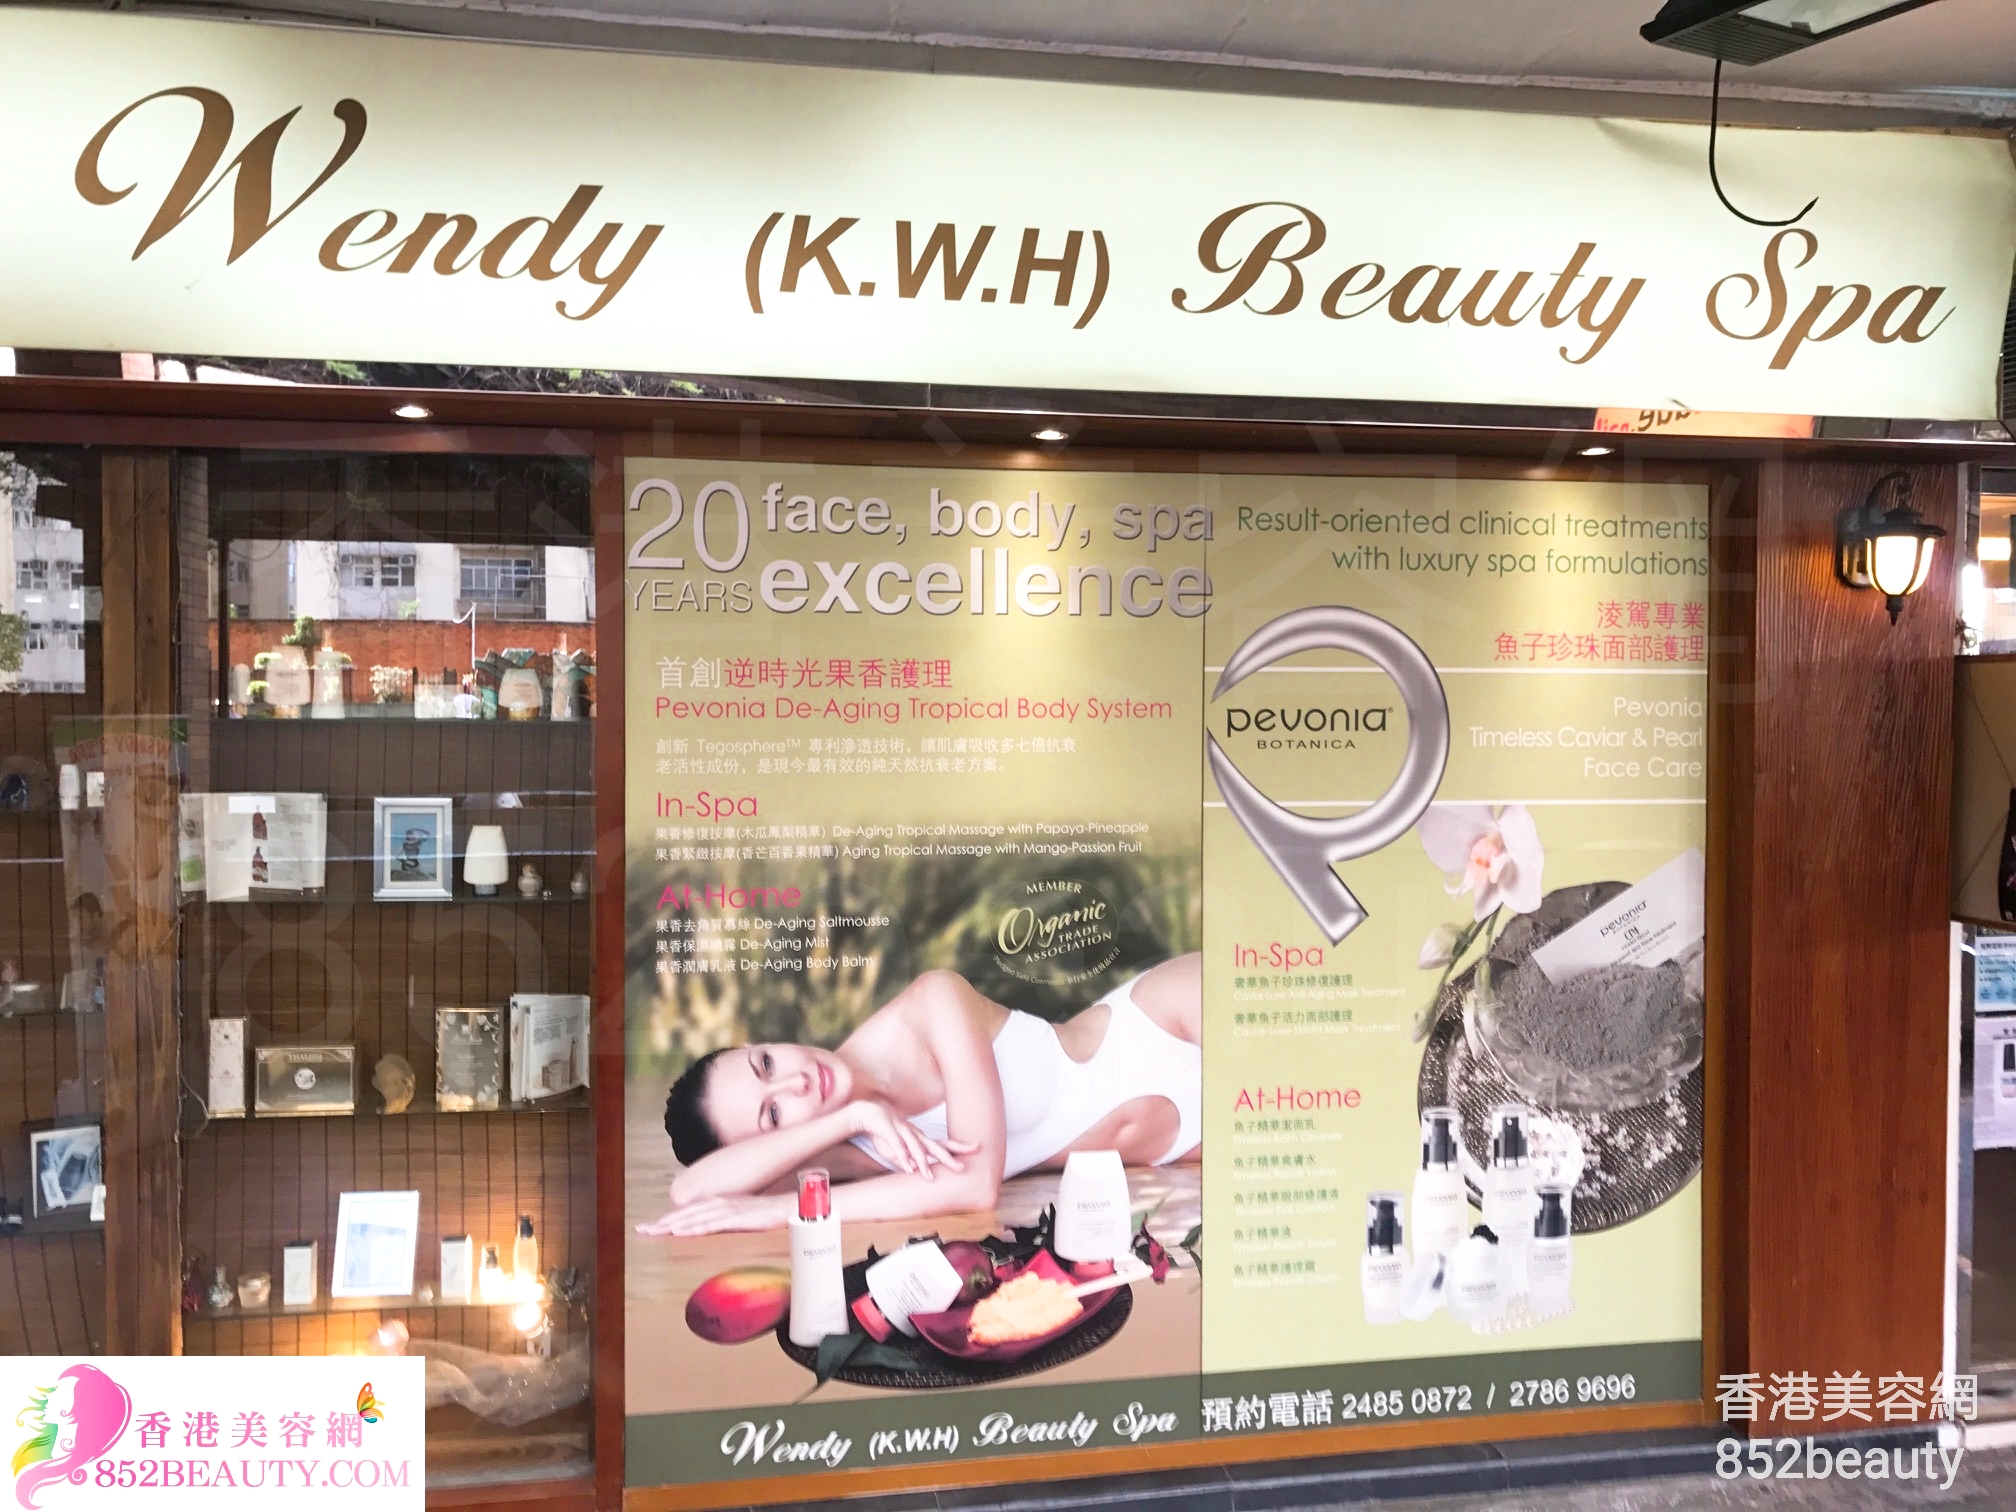 香港美容網 Hong Kong Beauty Salon 美容院 / 美容師: Wendy (K.W.H) Beauty Spa